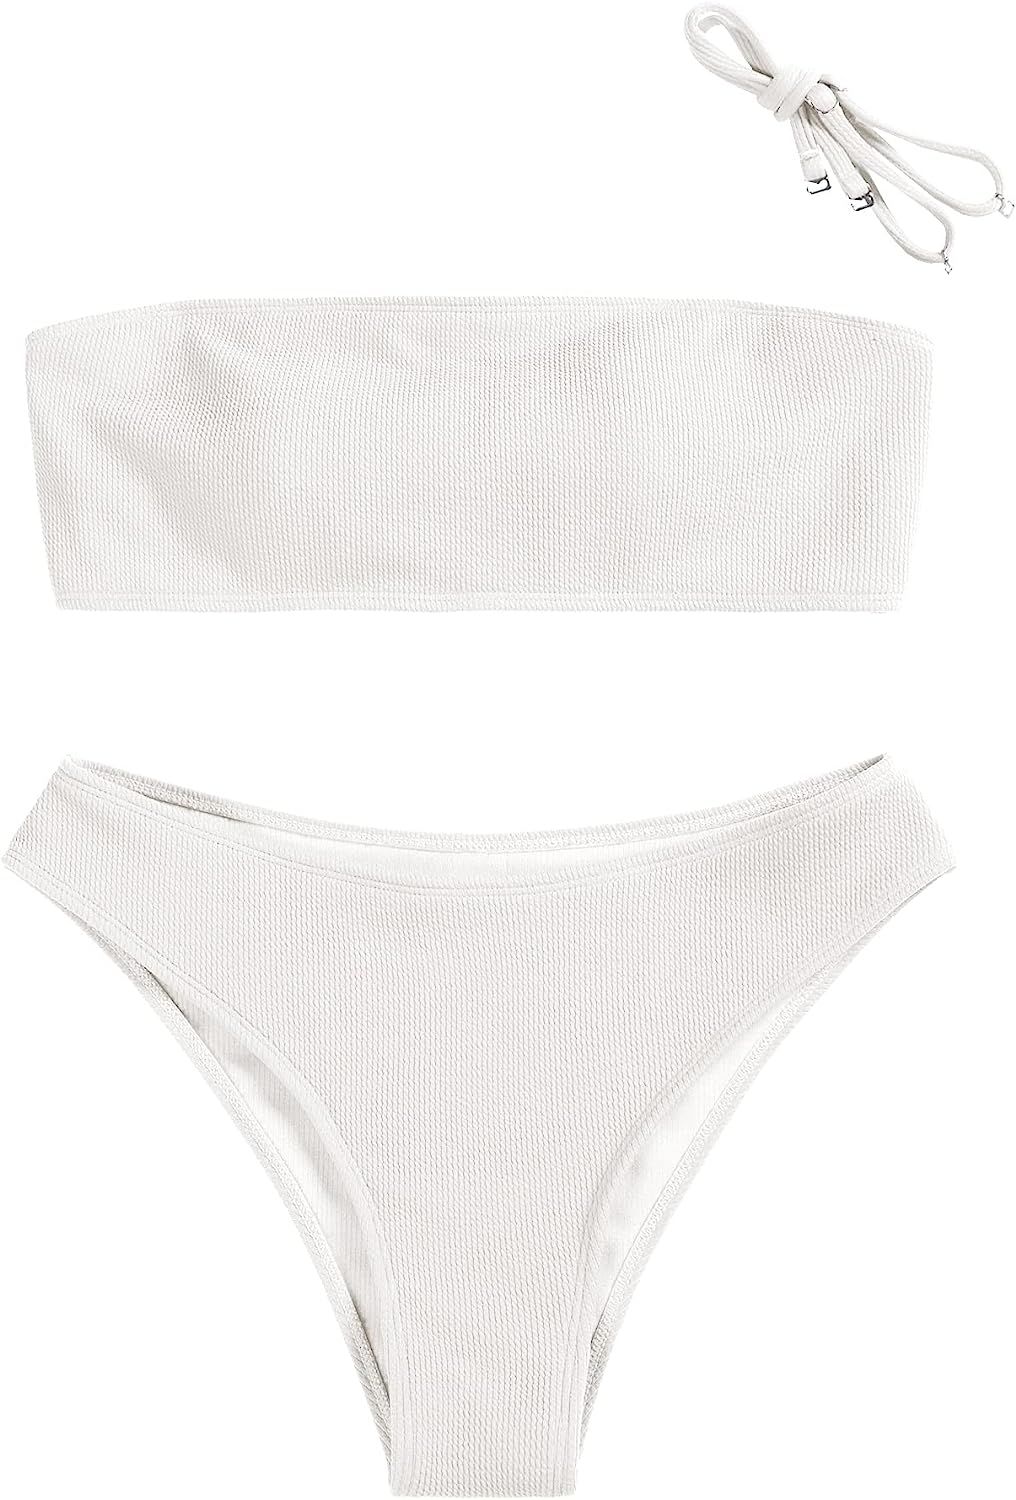 ZAFUL Women Strapless Bikini Set Lace Up Ribbed High Cut Bandeau 2 Piece Swimsuit | Amazon (US)